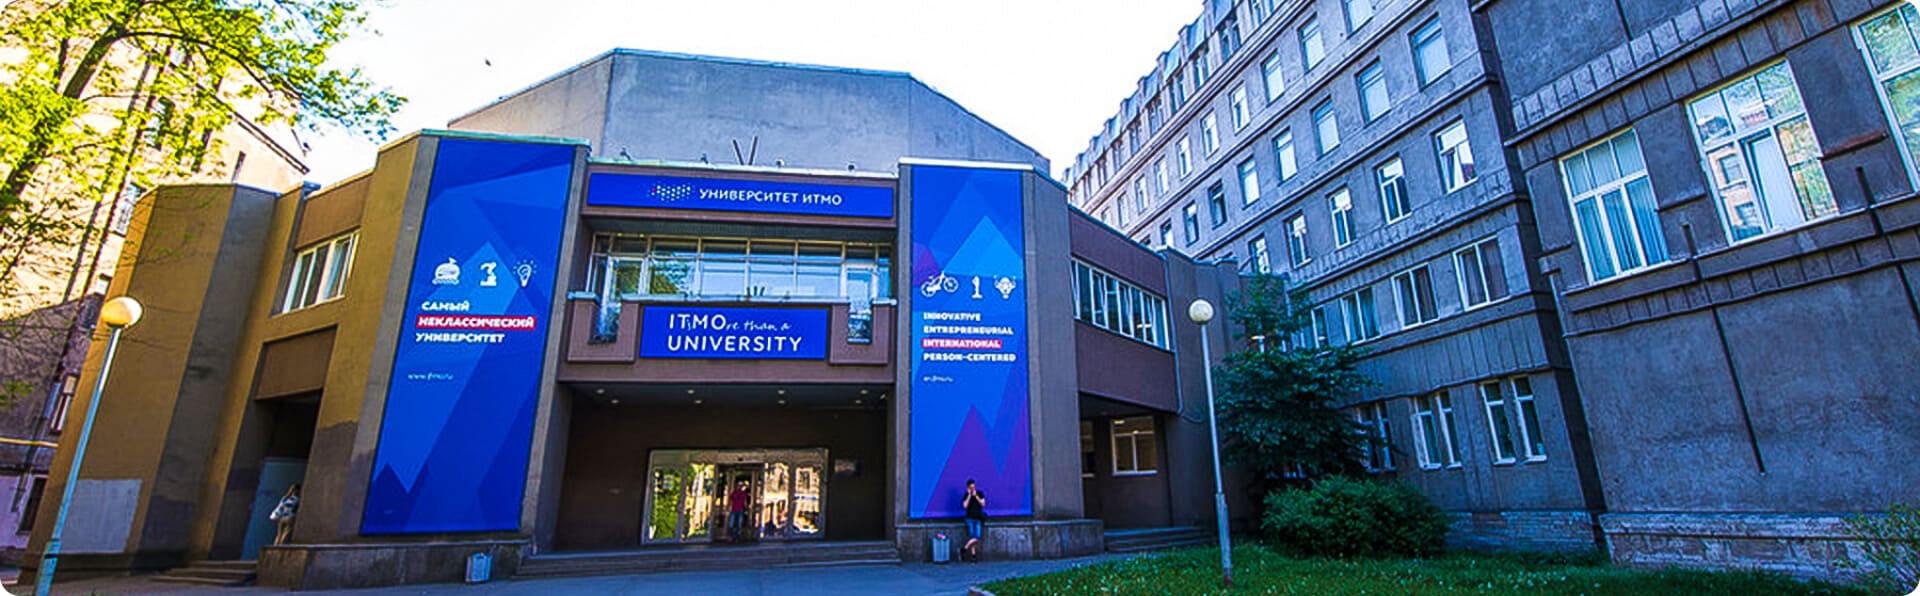 Здание Университета ИТМО8